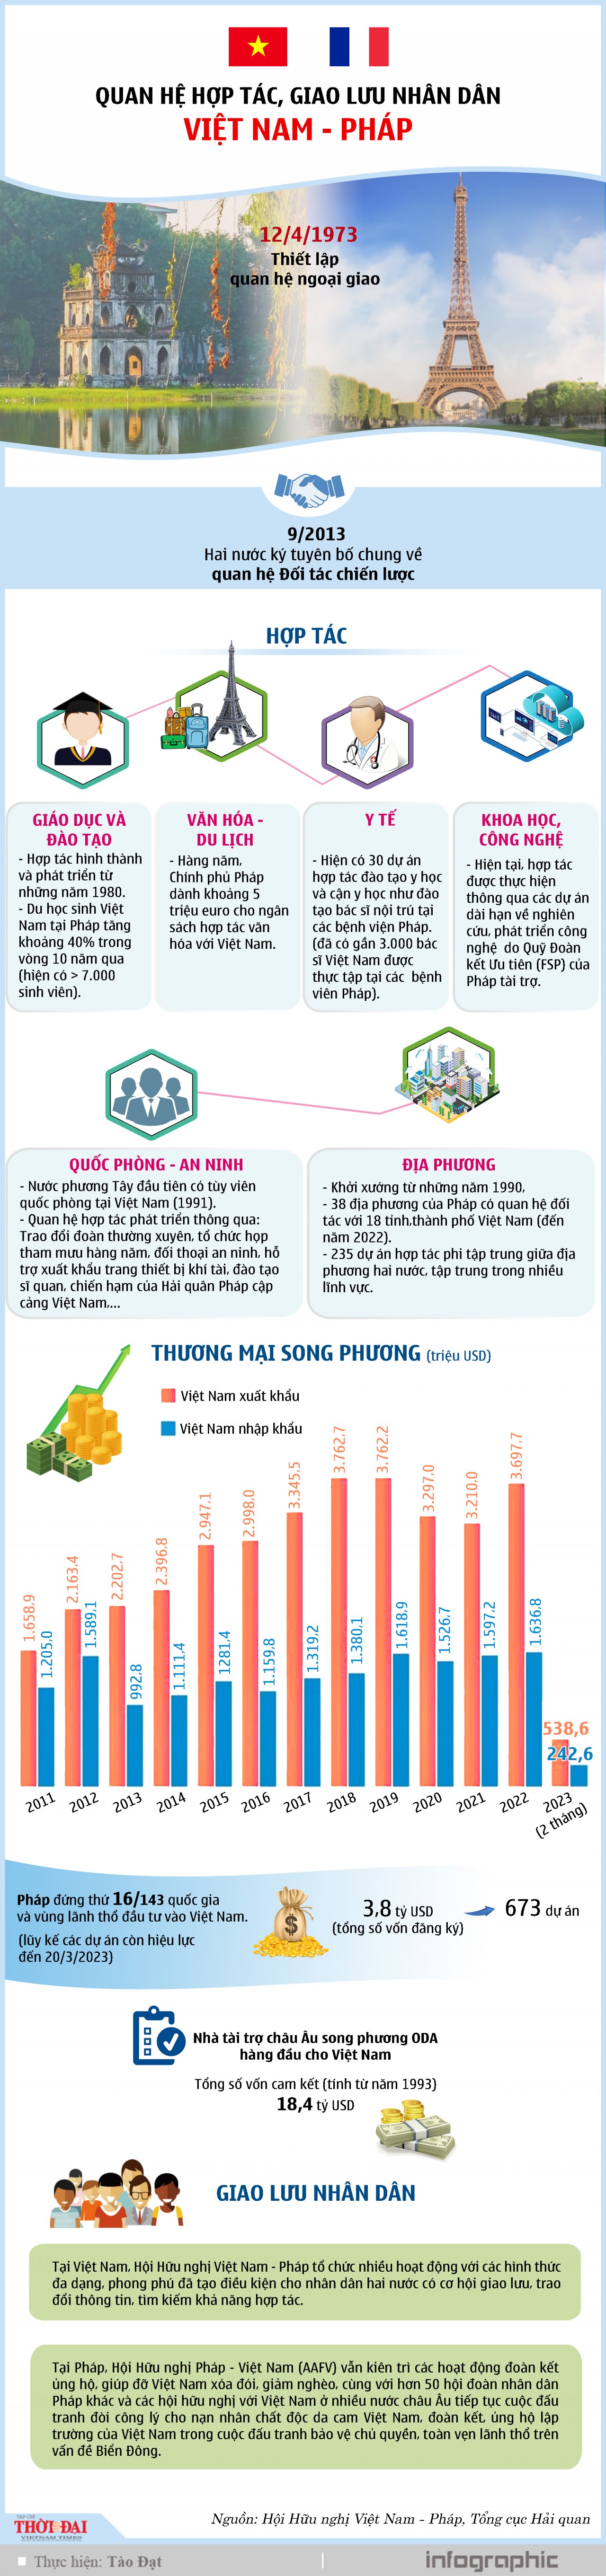 [Infographic] Quan hệ hợp tác, giao lưu nhân dân Việt Nam - Pháp